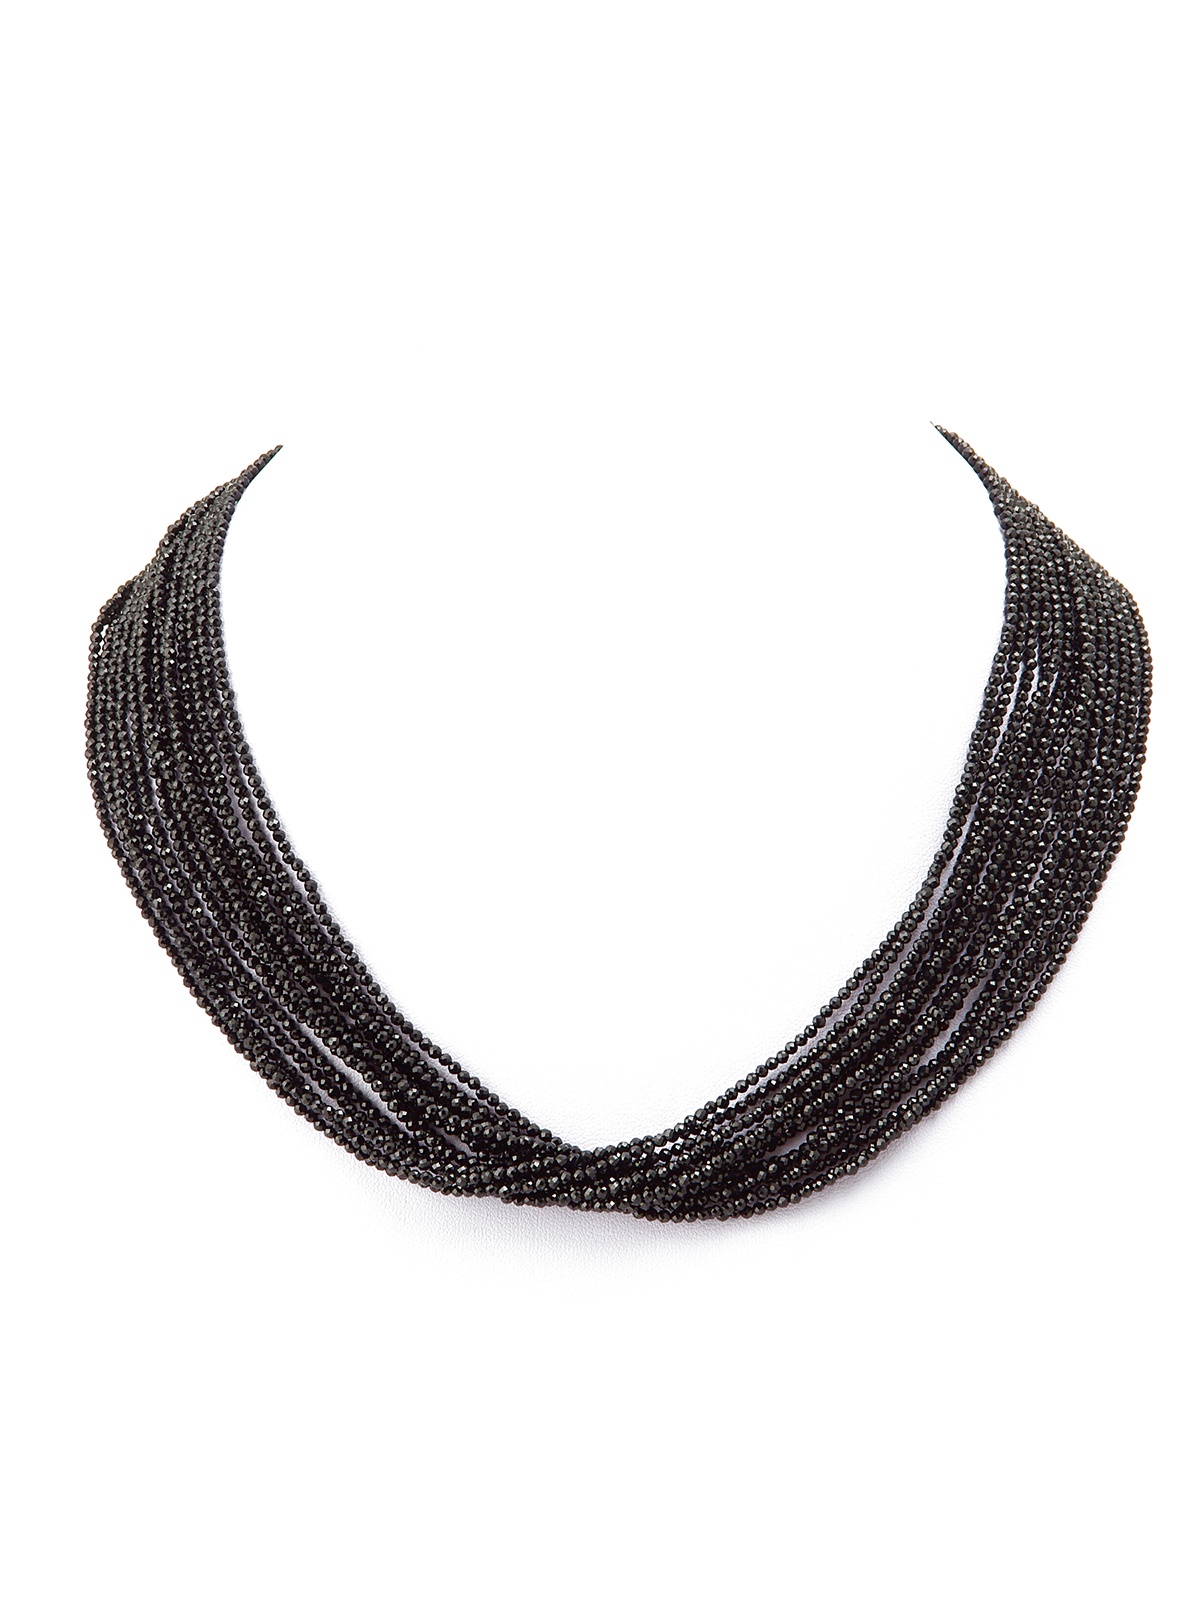 фото Колье/ожерелье бижутерное ЖемАрт с8641-043, Шпинель, Бижутерный сплав, черный, серебристый